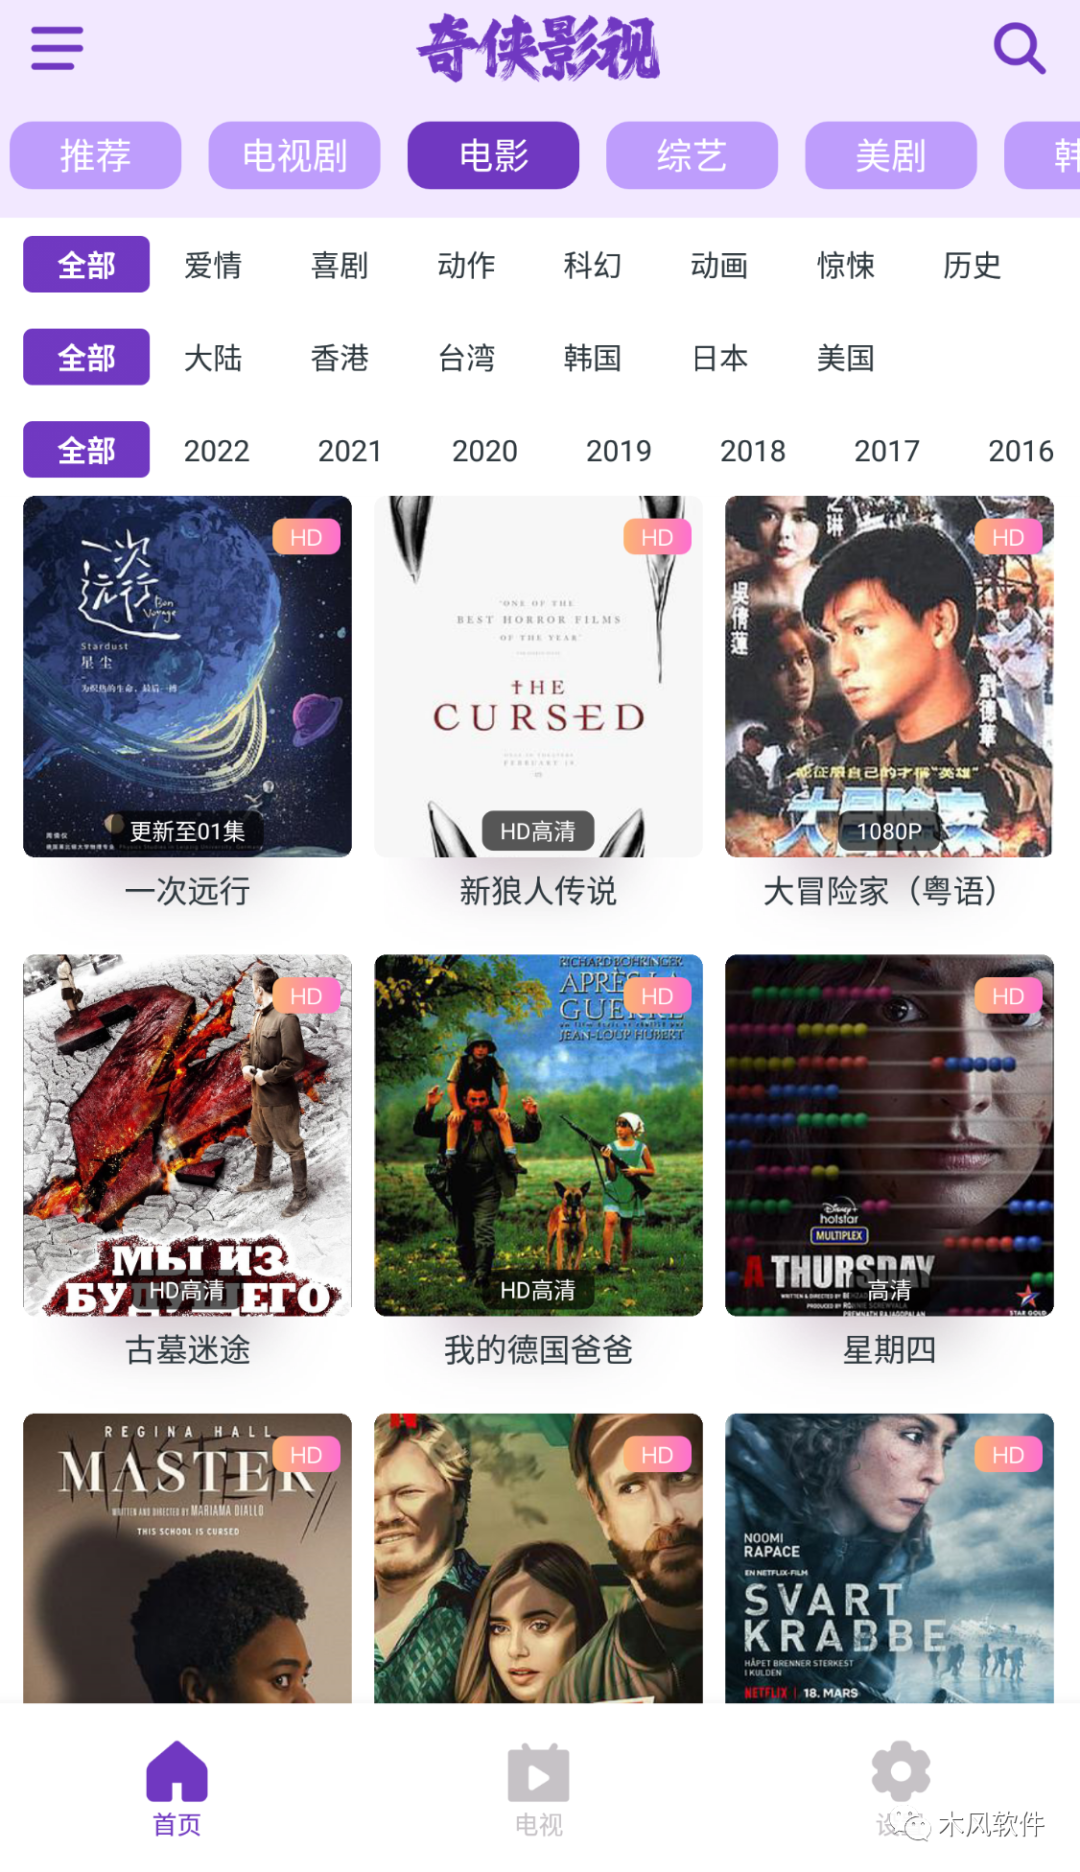 奇侠影视v1.0.0手机影视软件含安卓端和iOS端-木风软件站